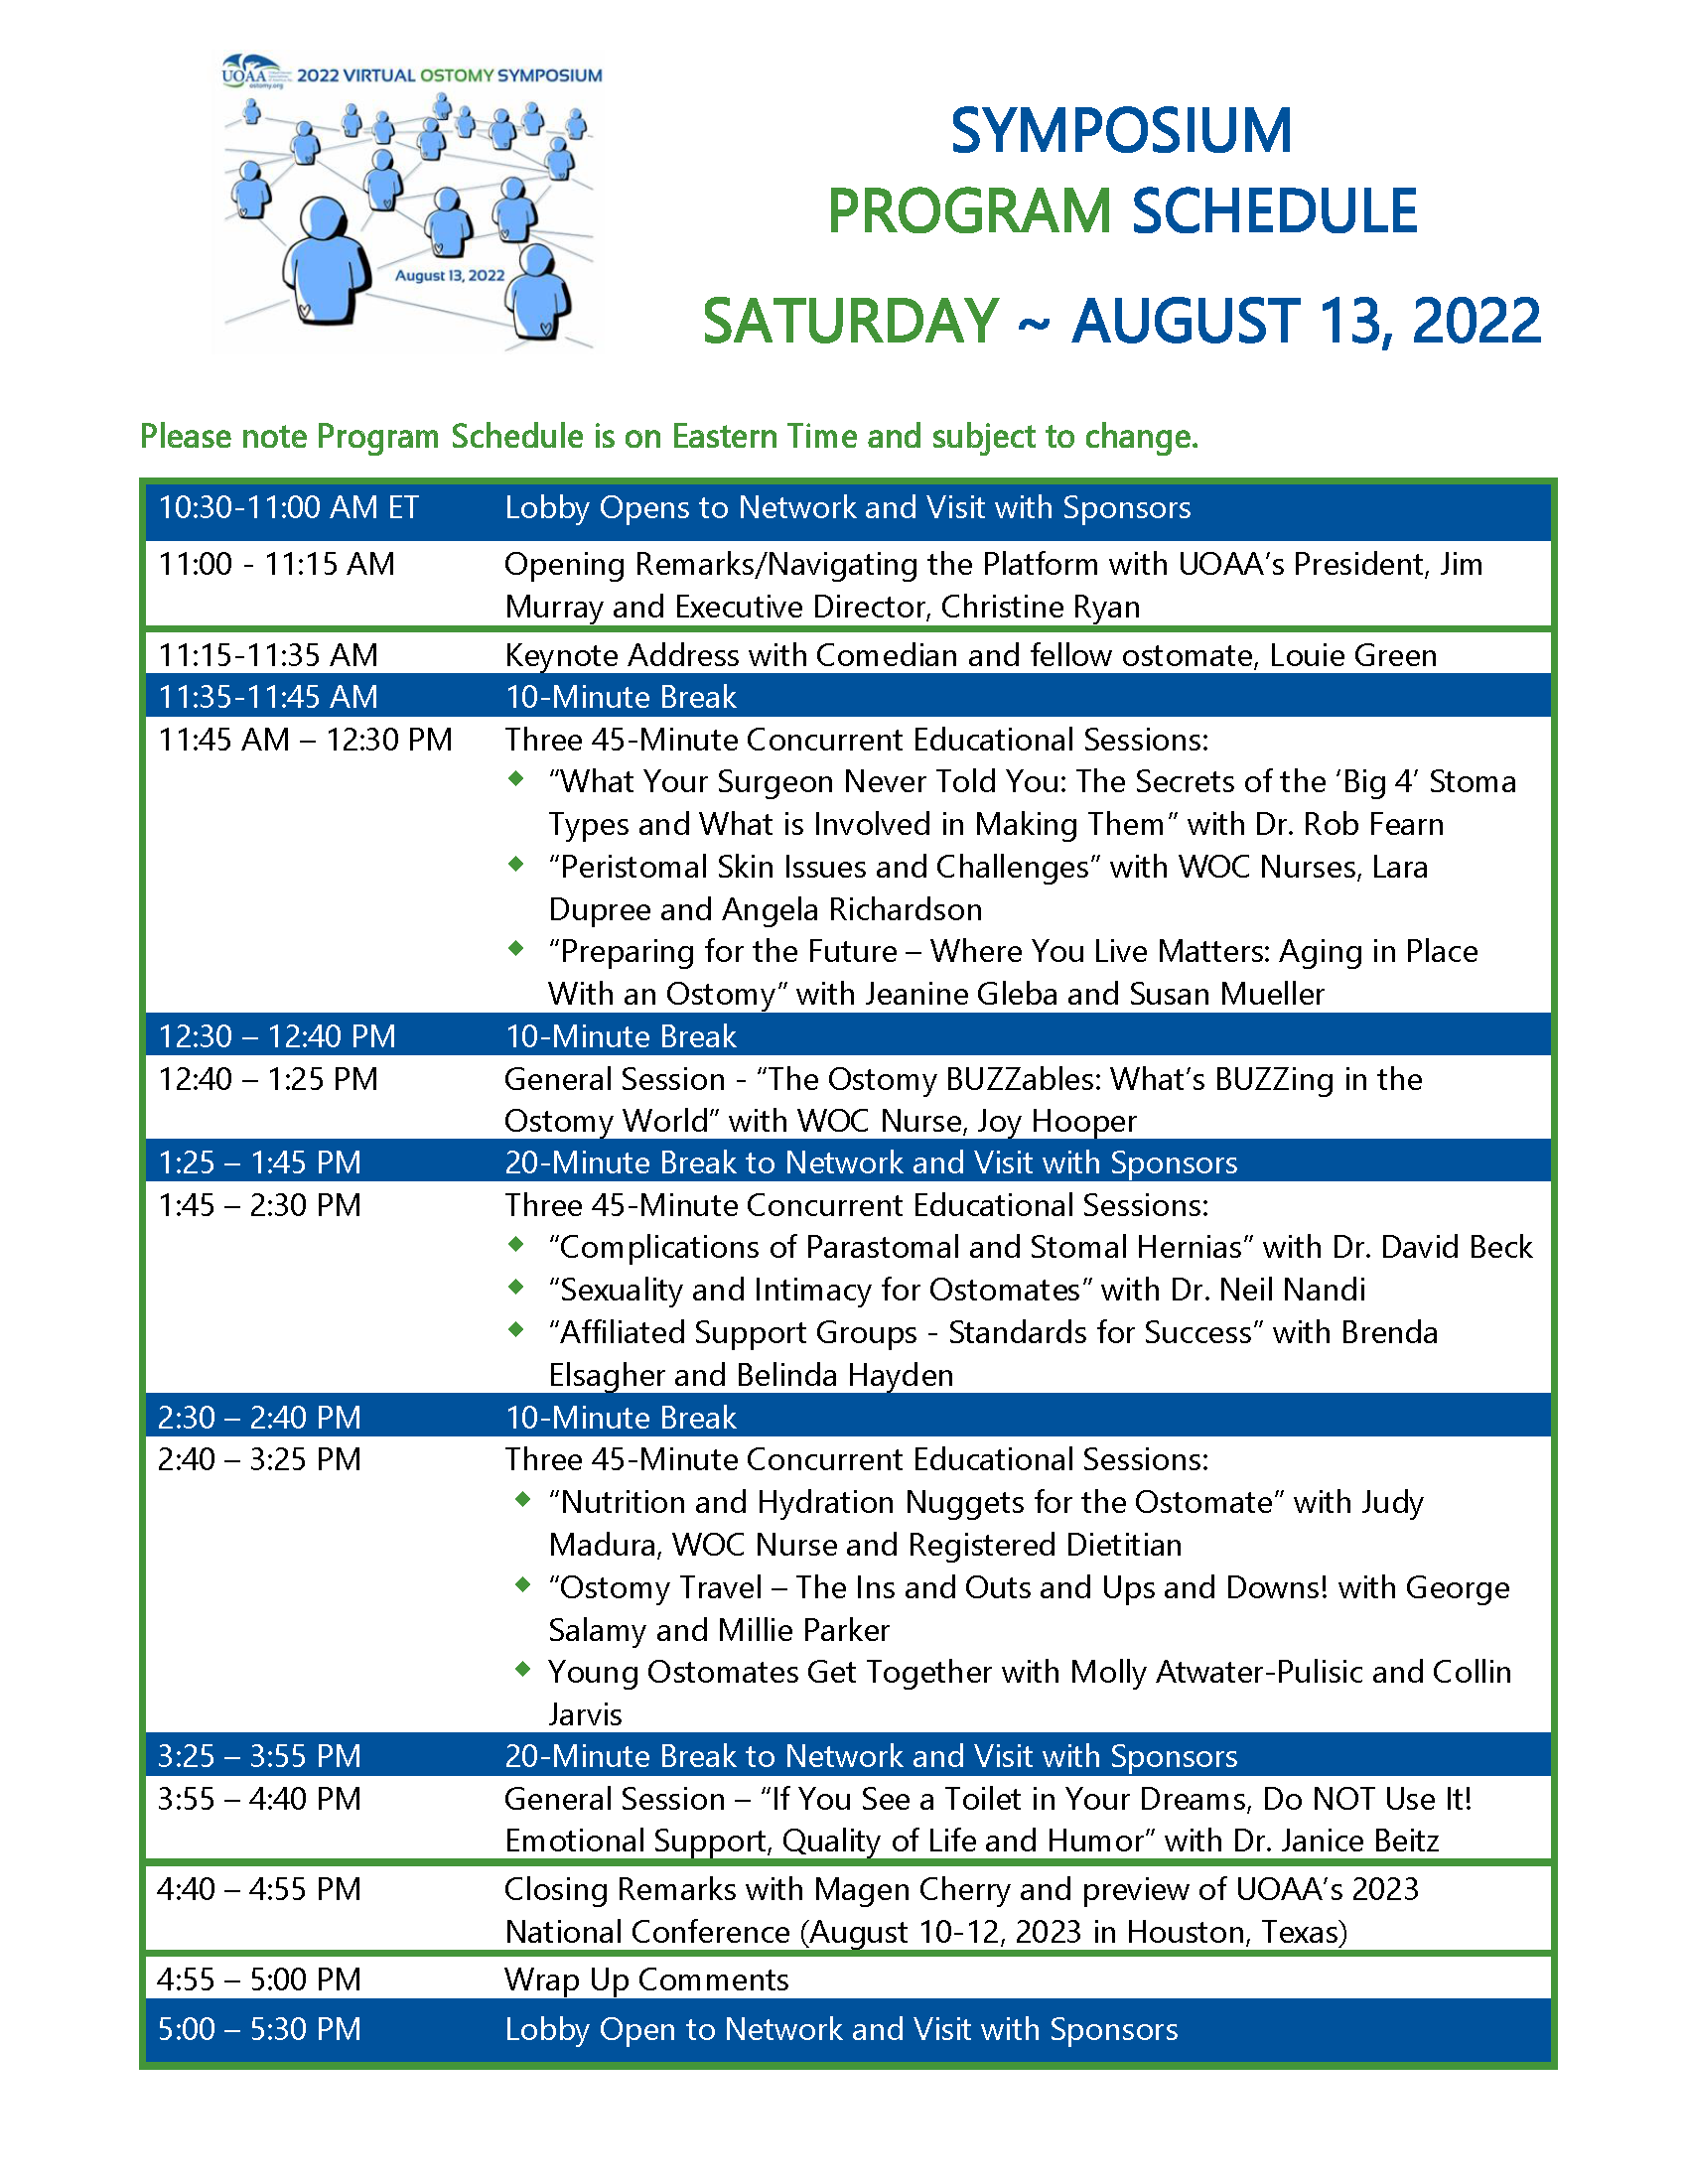 Virtual Symposium Program Schedule